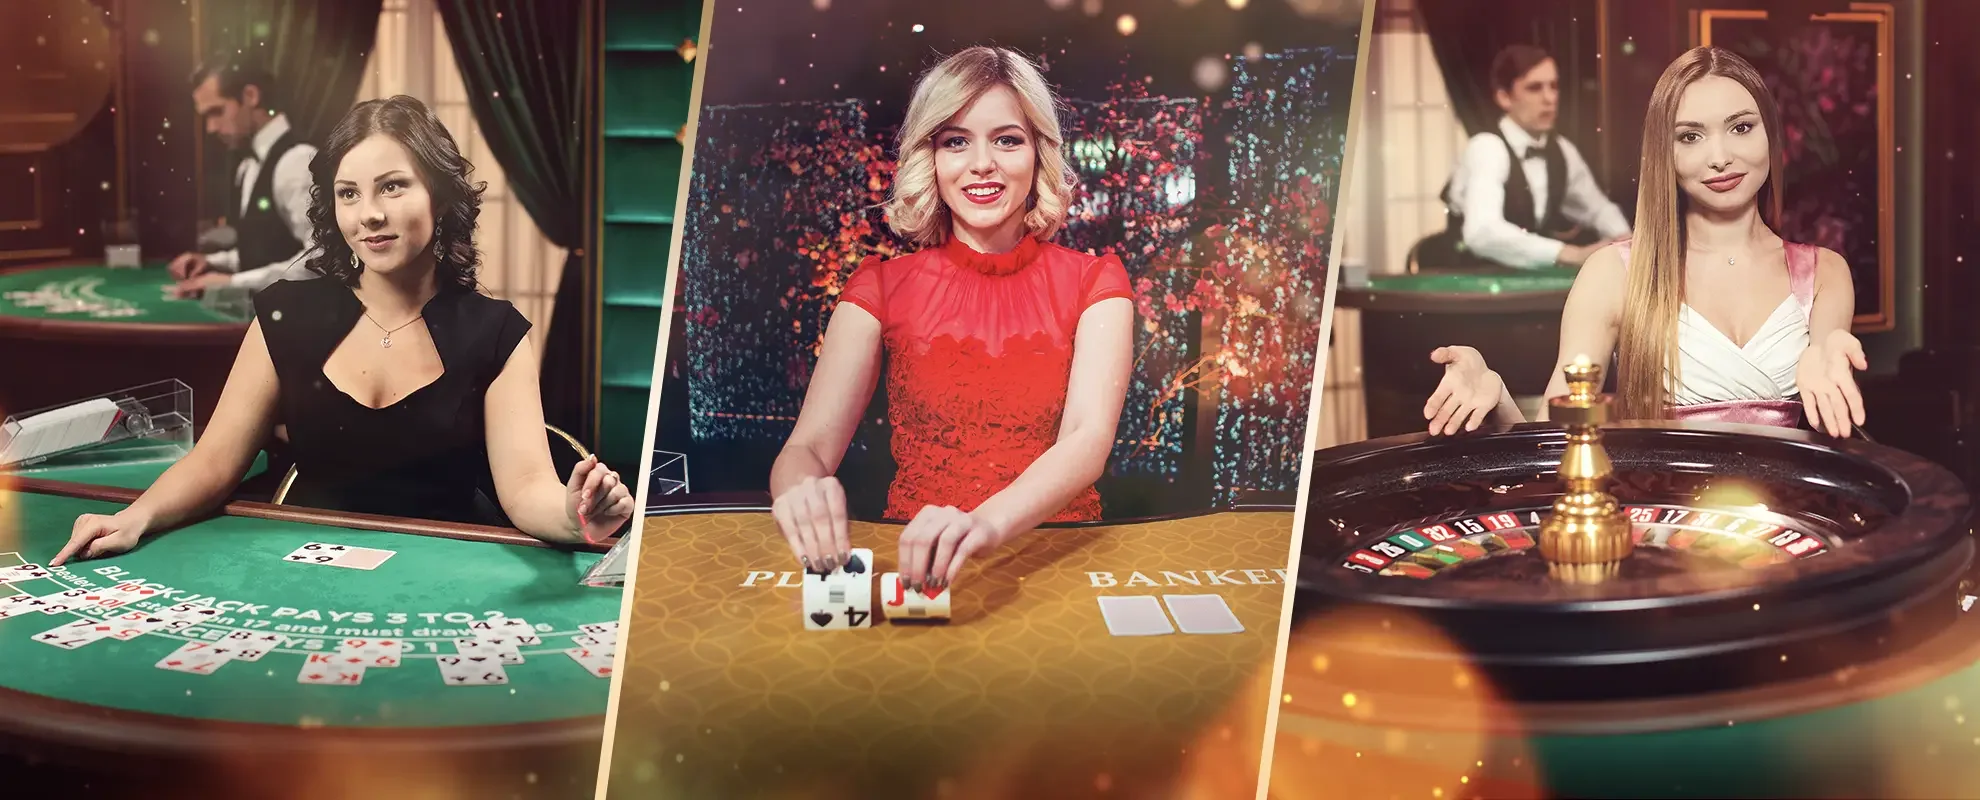 Tijdslimieten in Online Casino's: Beheersing van je speeltijd voor verantwoord gokken